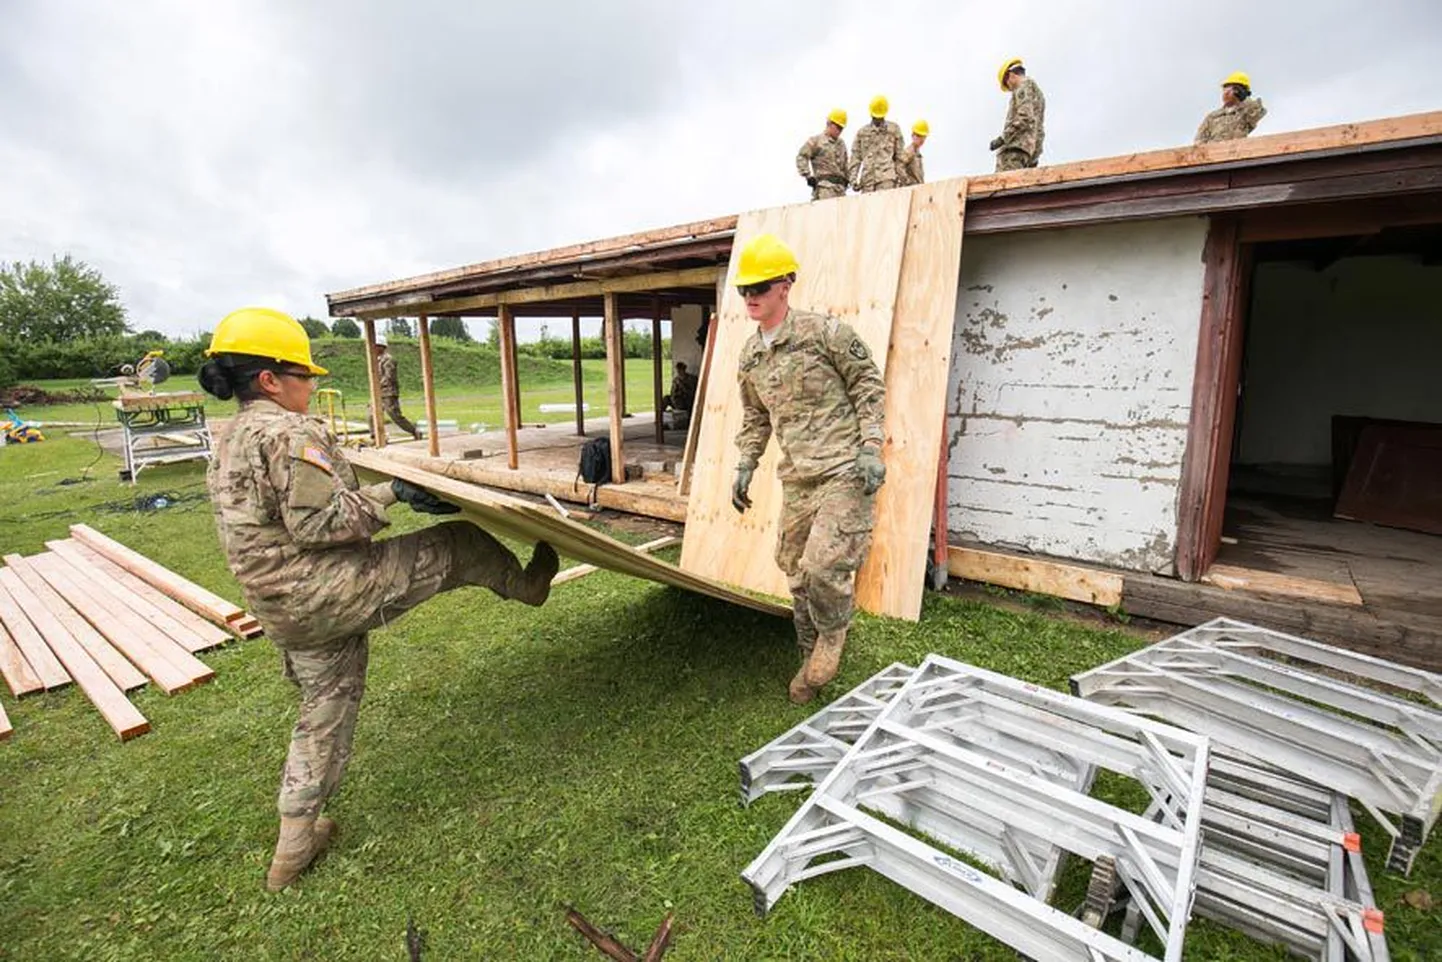 Naine paneb asja paika: kõrvuti USA armee meestega rassisid sellel nädalal Väätsa lasteaia mängumaja katuse renoveerimistöödel ka naised.